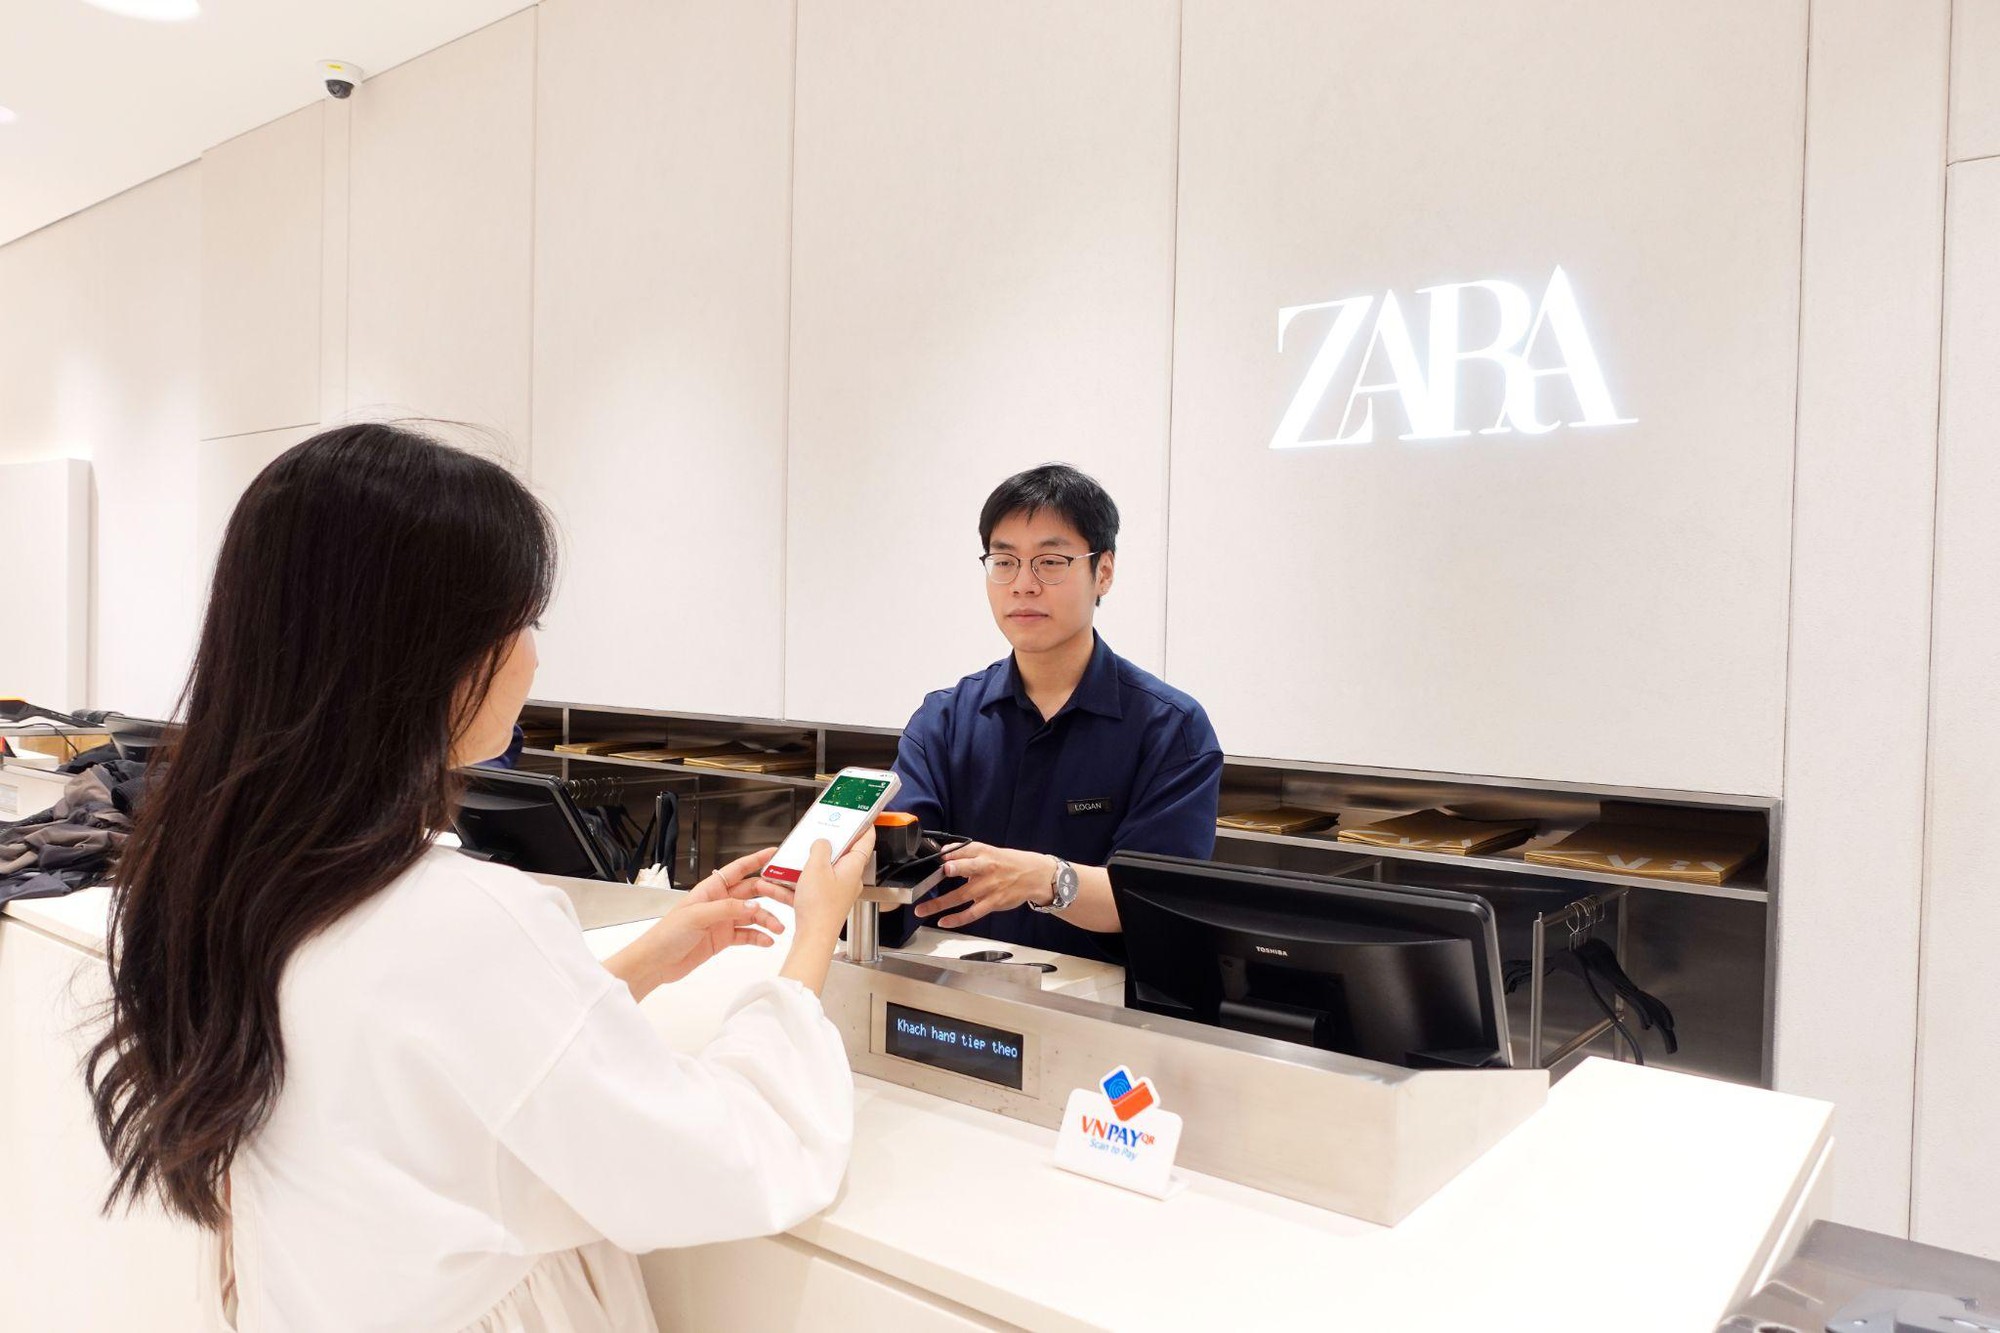 VNPAY đổ bộ ZARA và các thương hiệu nhà Inditex, tối ưu trải nghiệm người dùng - Ảnh 1.